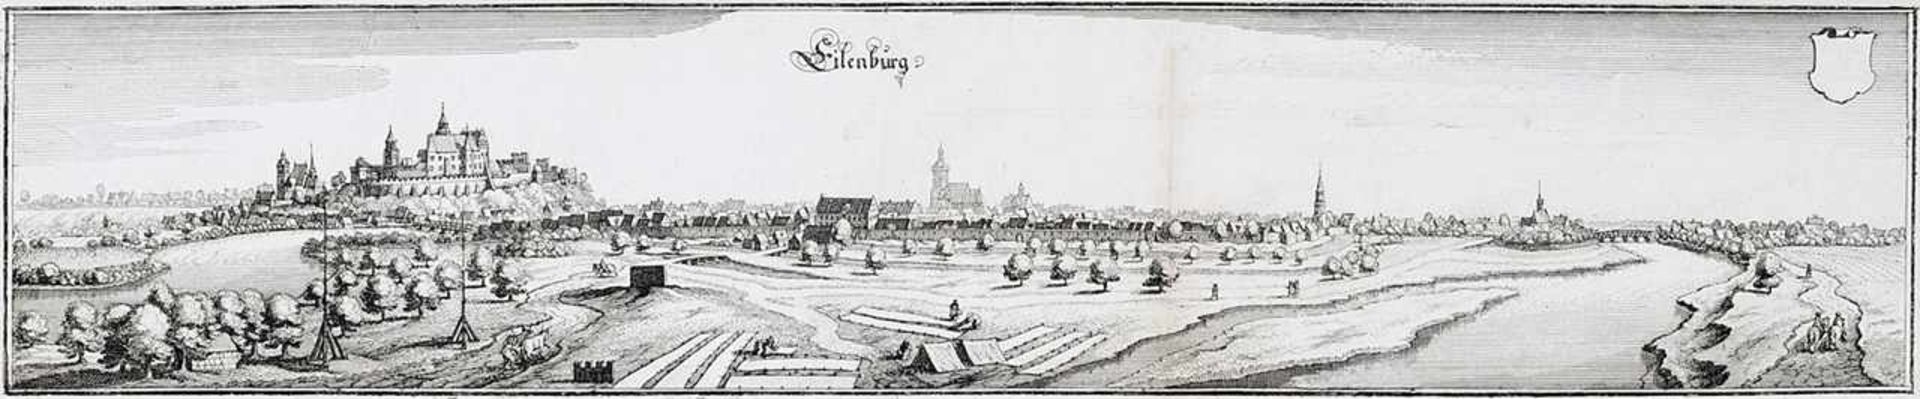 Merian d. Ä., Matthäus (1593 Basel - 1650 Schwalbach) Kupferstich. "Eilenburg". Historische